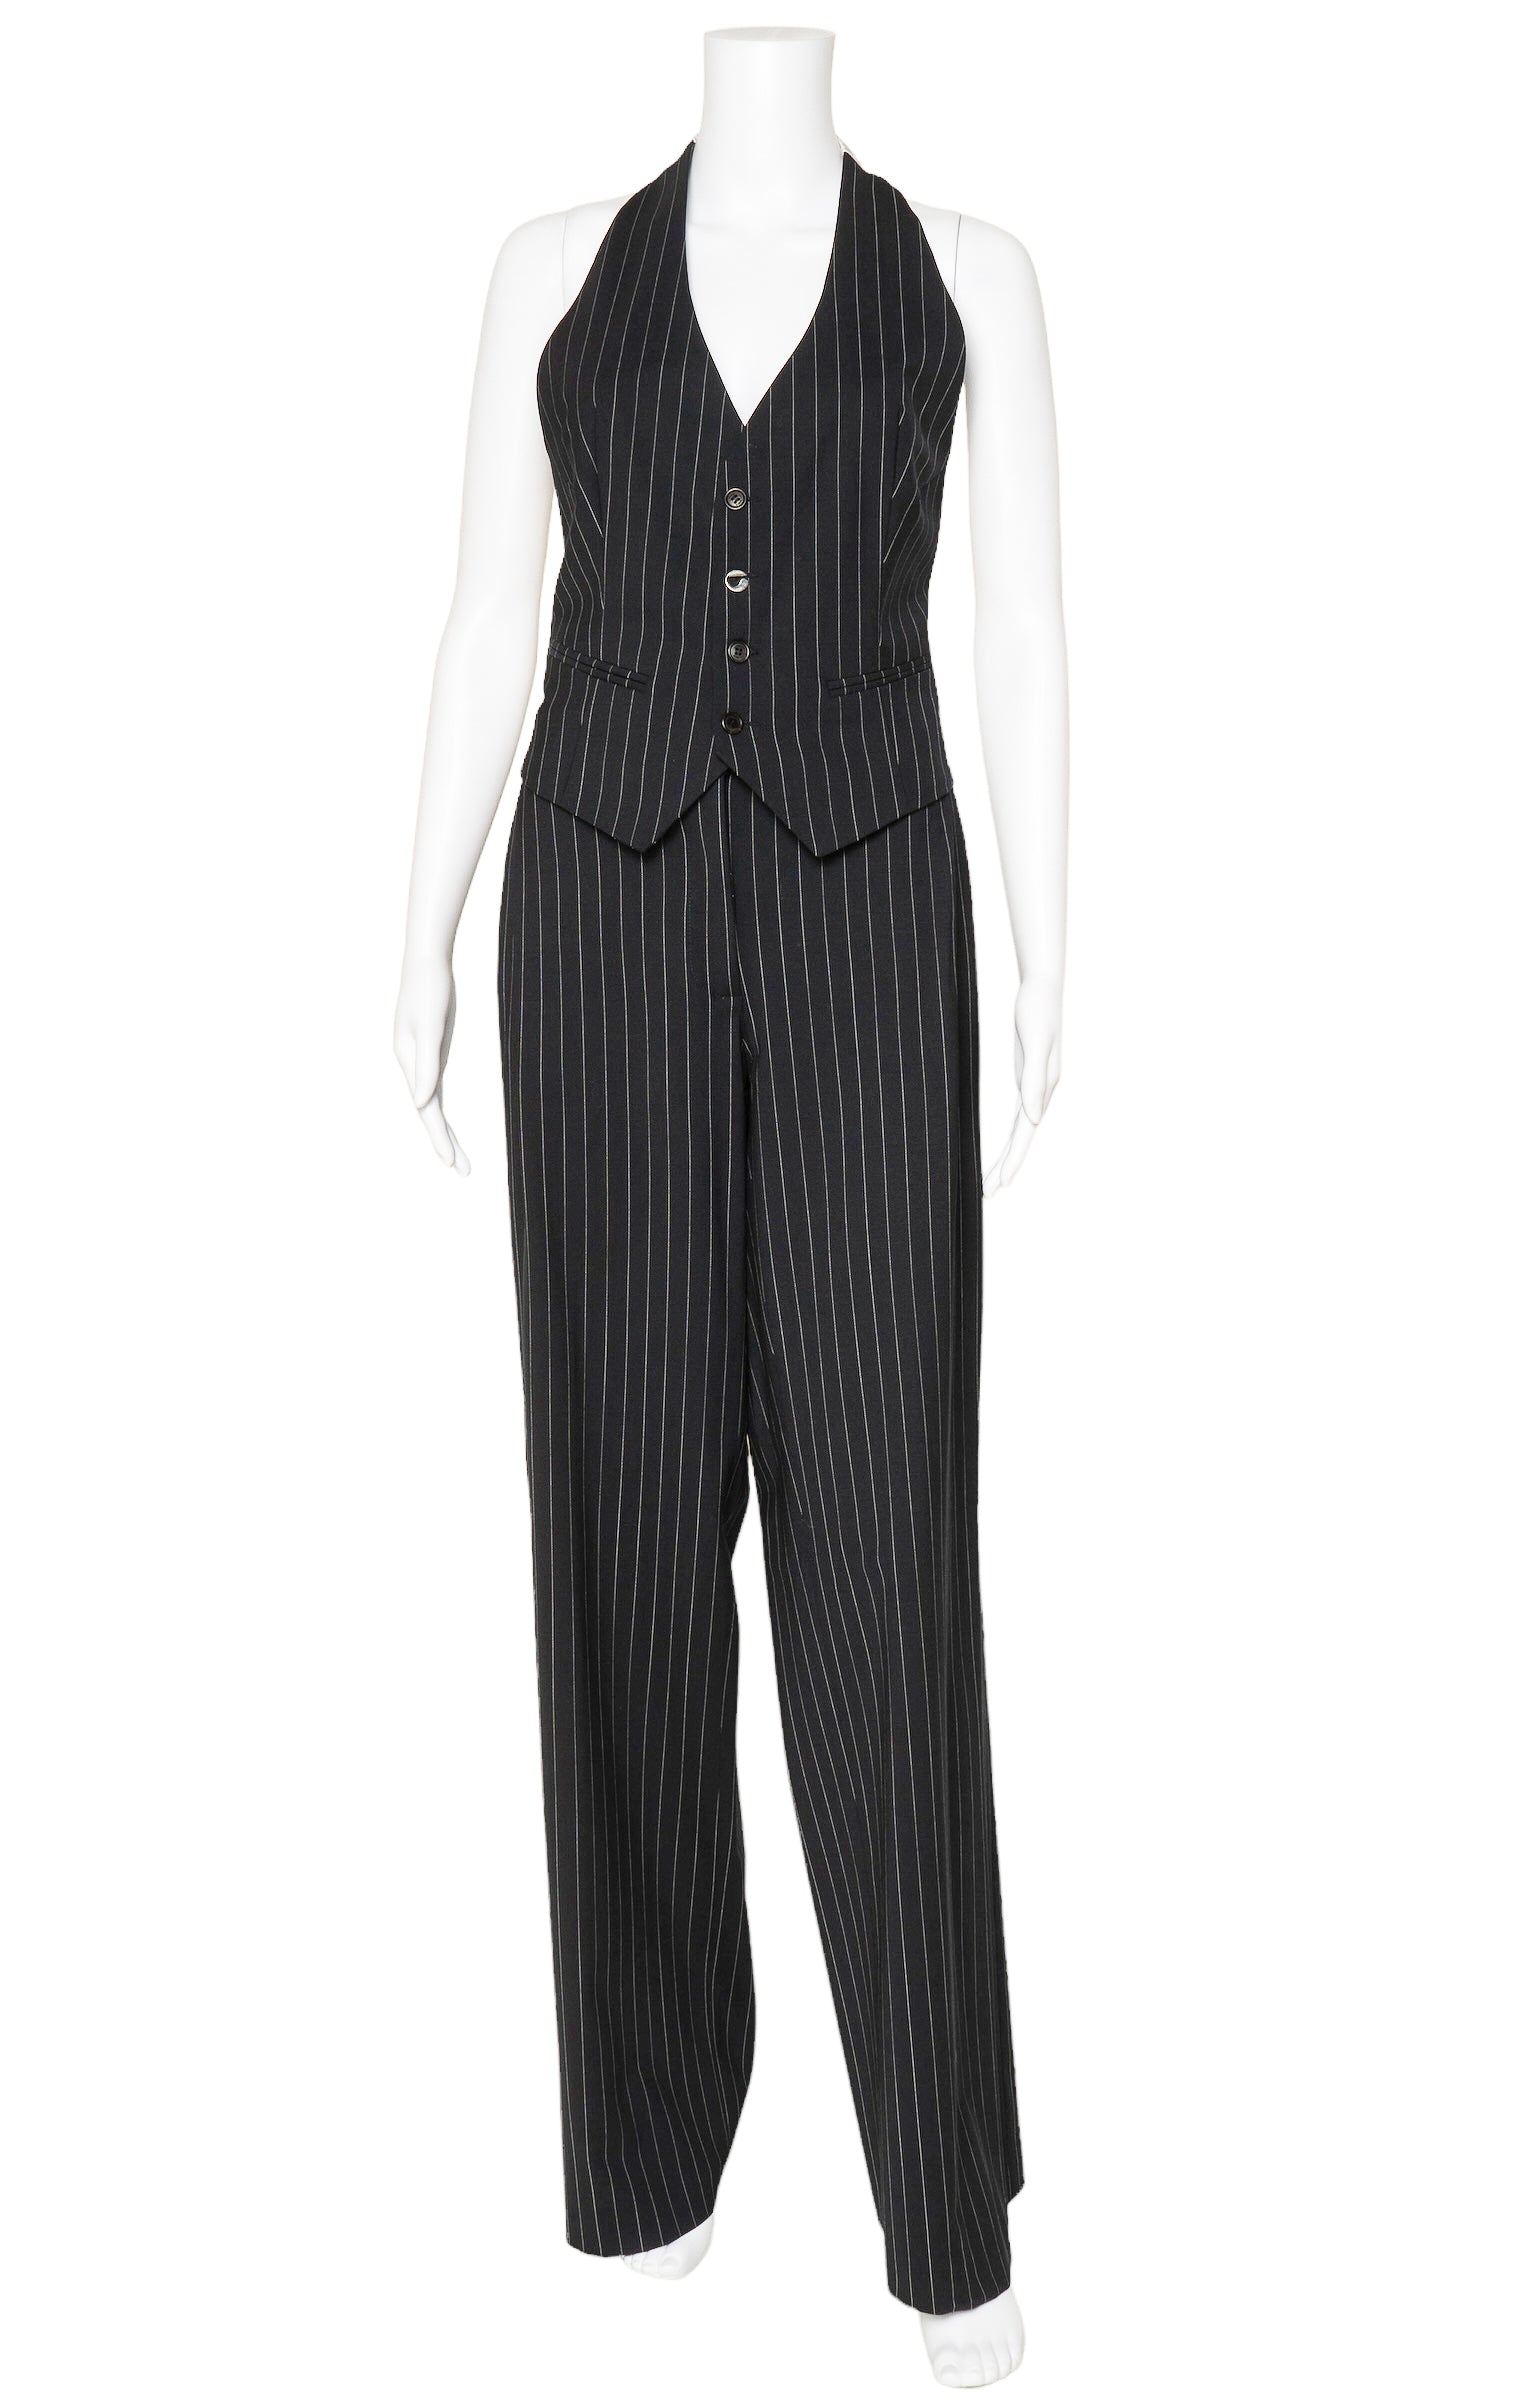 COPERNI (RARE) Suit Size: Top - US 8 Pants - US 10